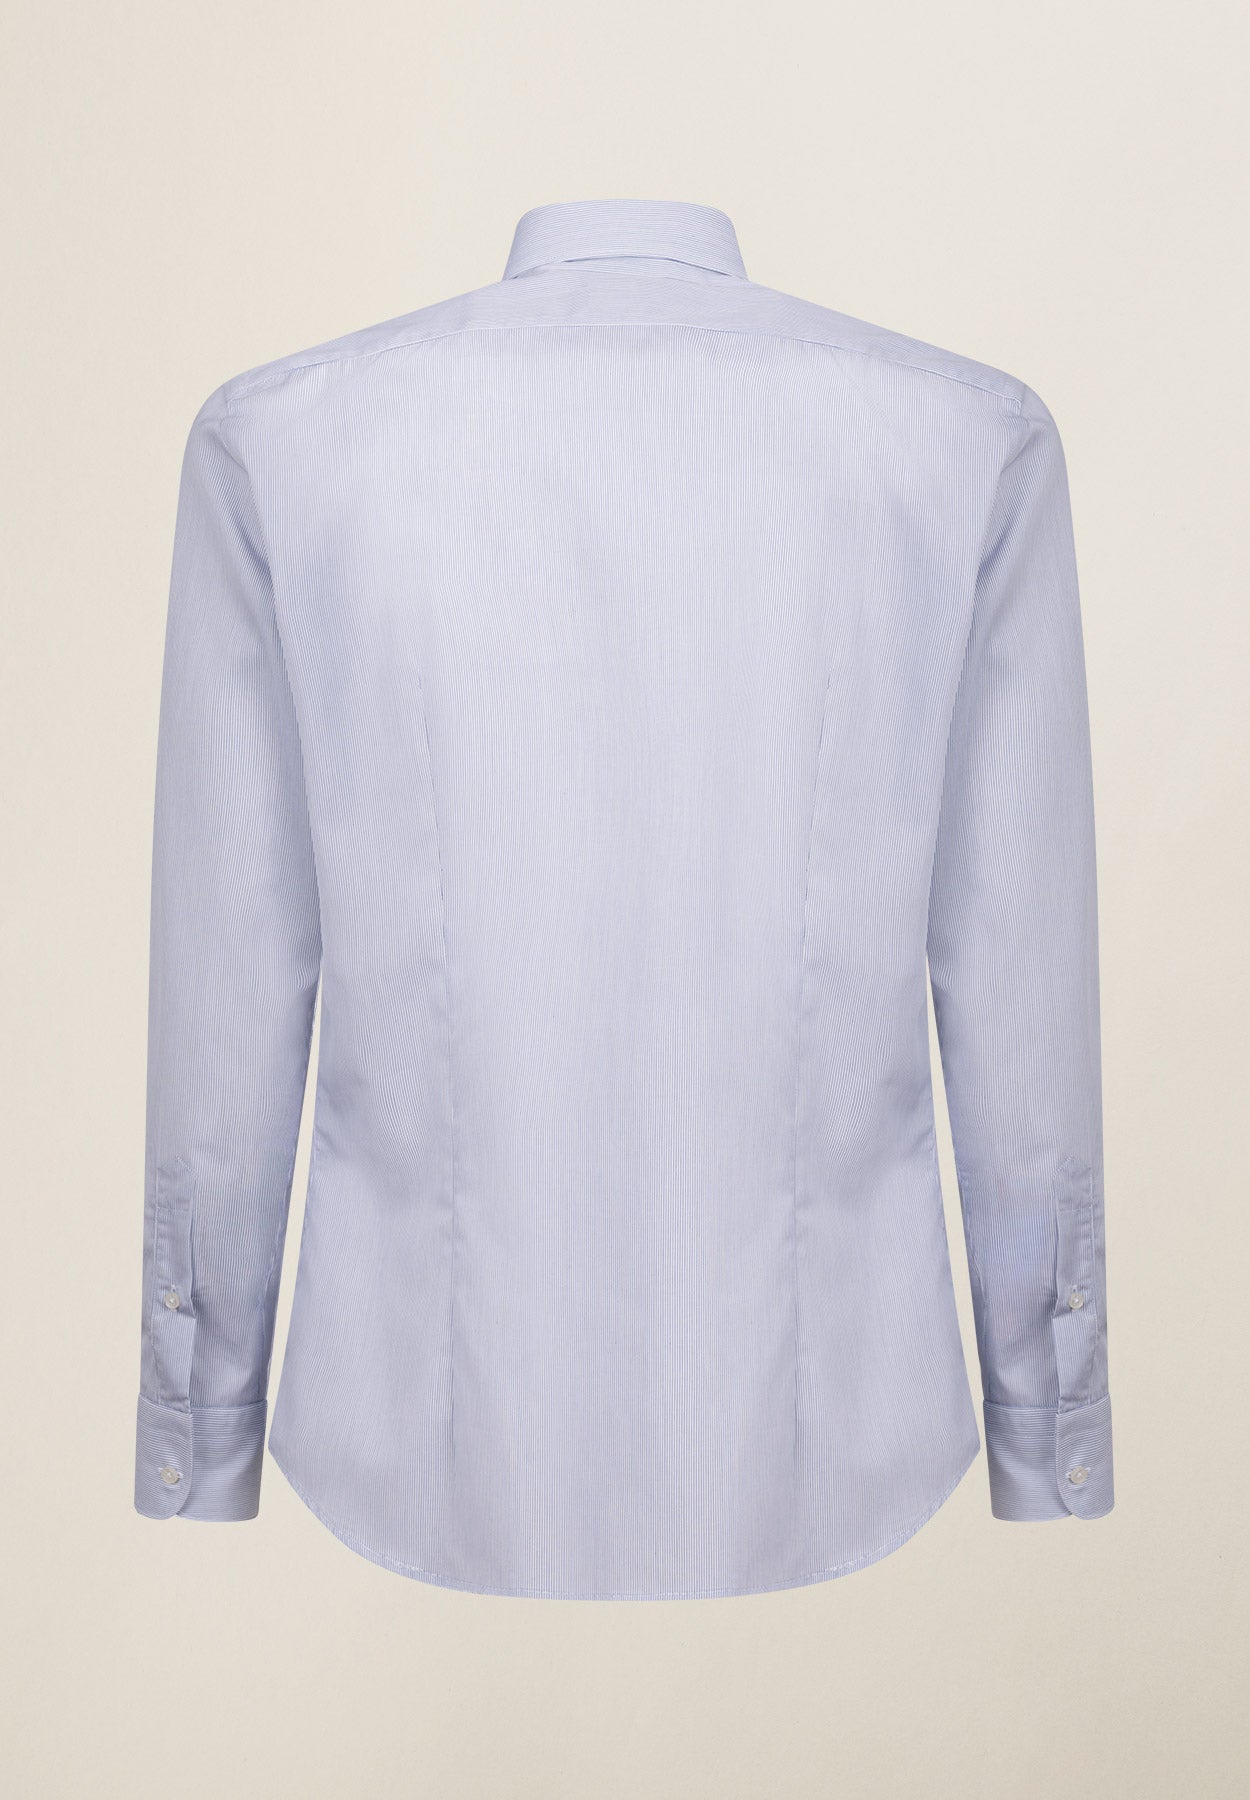 Camicia bianca rigata blu cotone no stiro slim fit